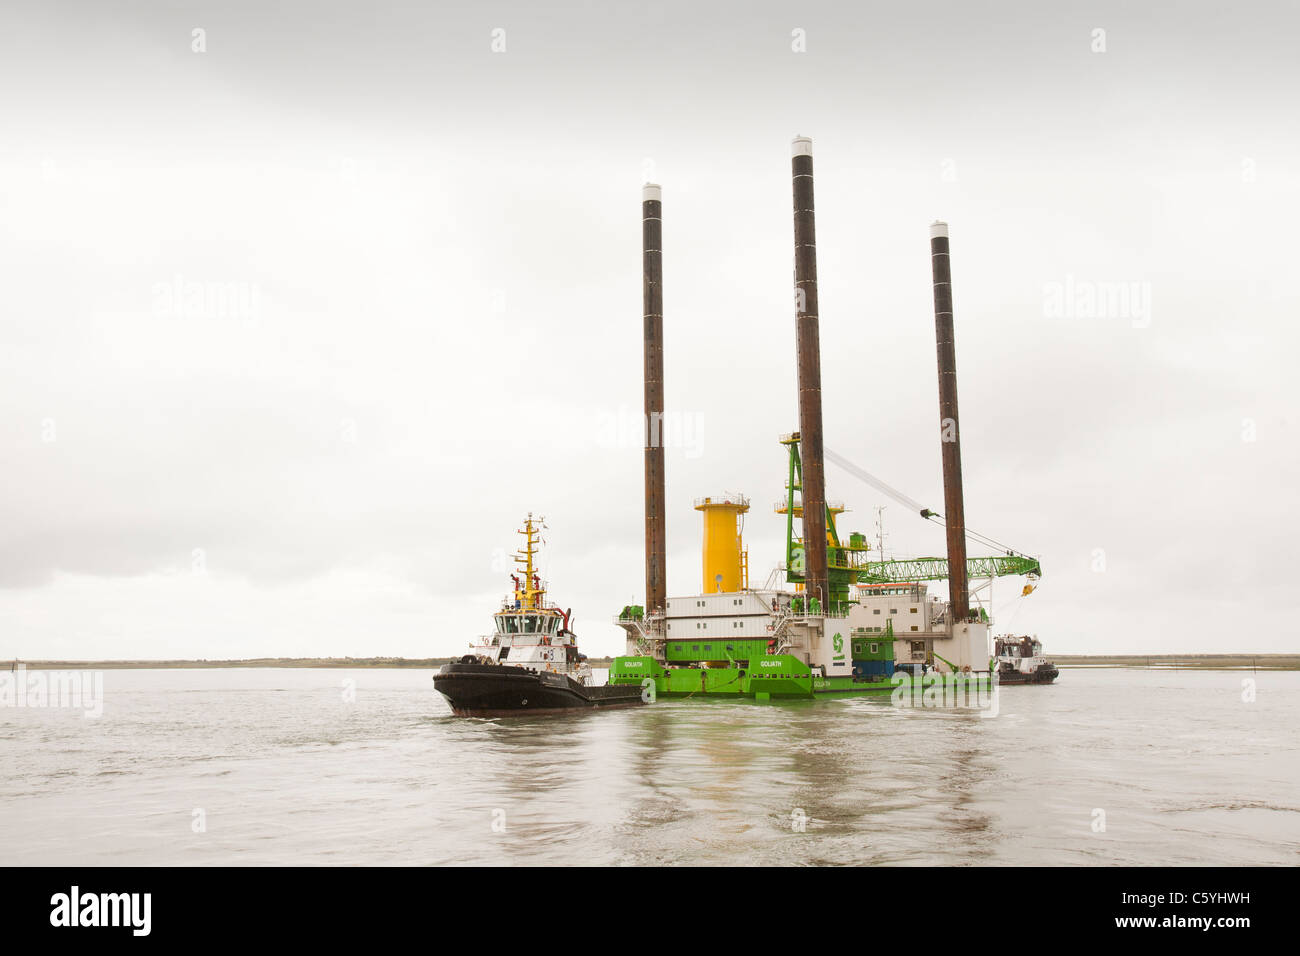 Das Aufbocken Lastkahn, Goliath von Schlepper zum Offshore-Windpark Walney heraus geschleppt, mit dem Bau zu helfen. Stockfoto